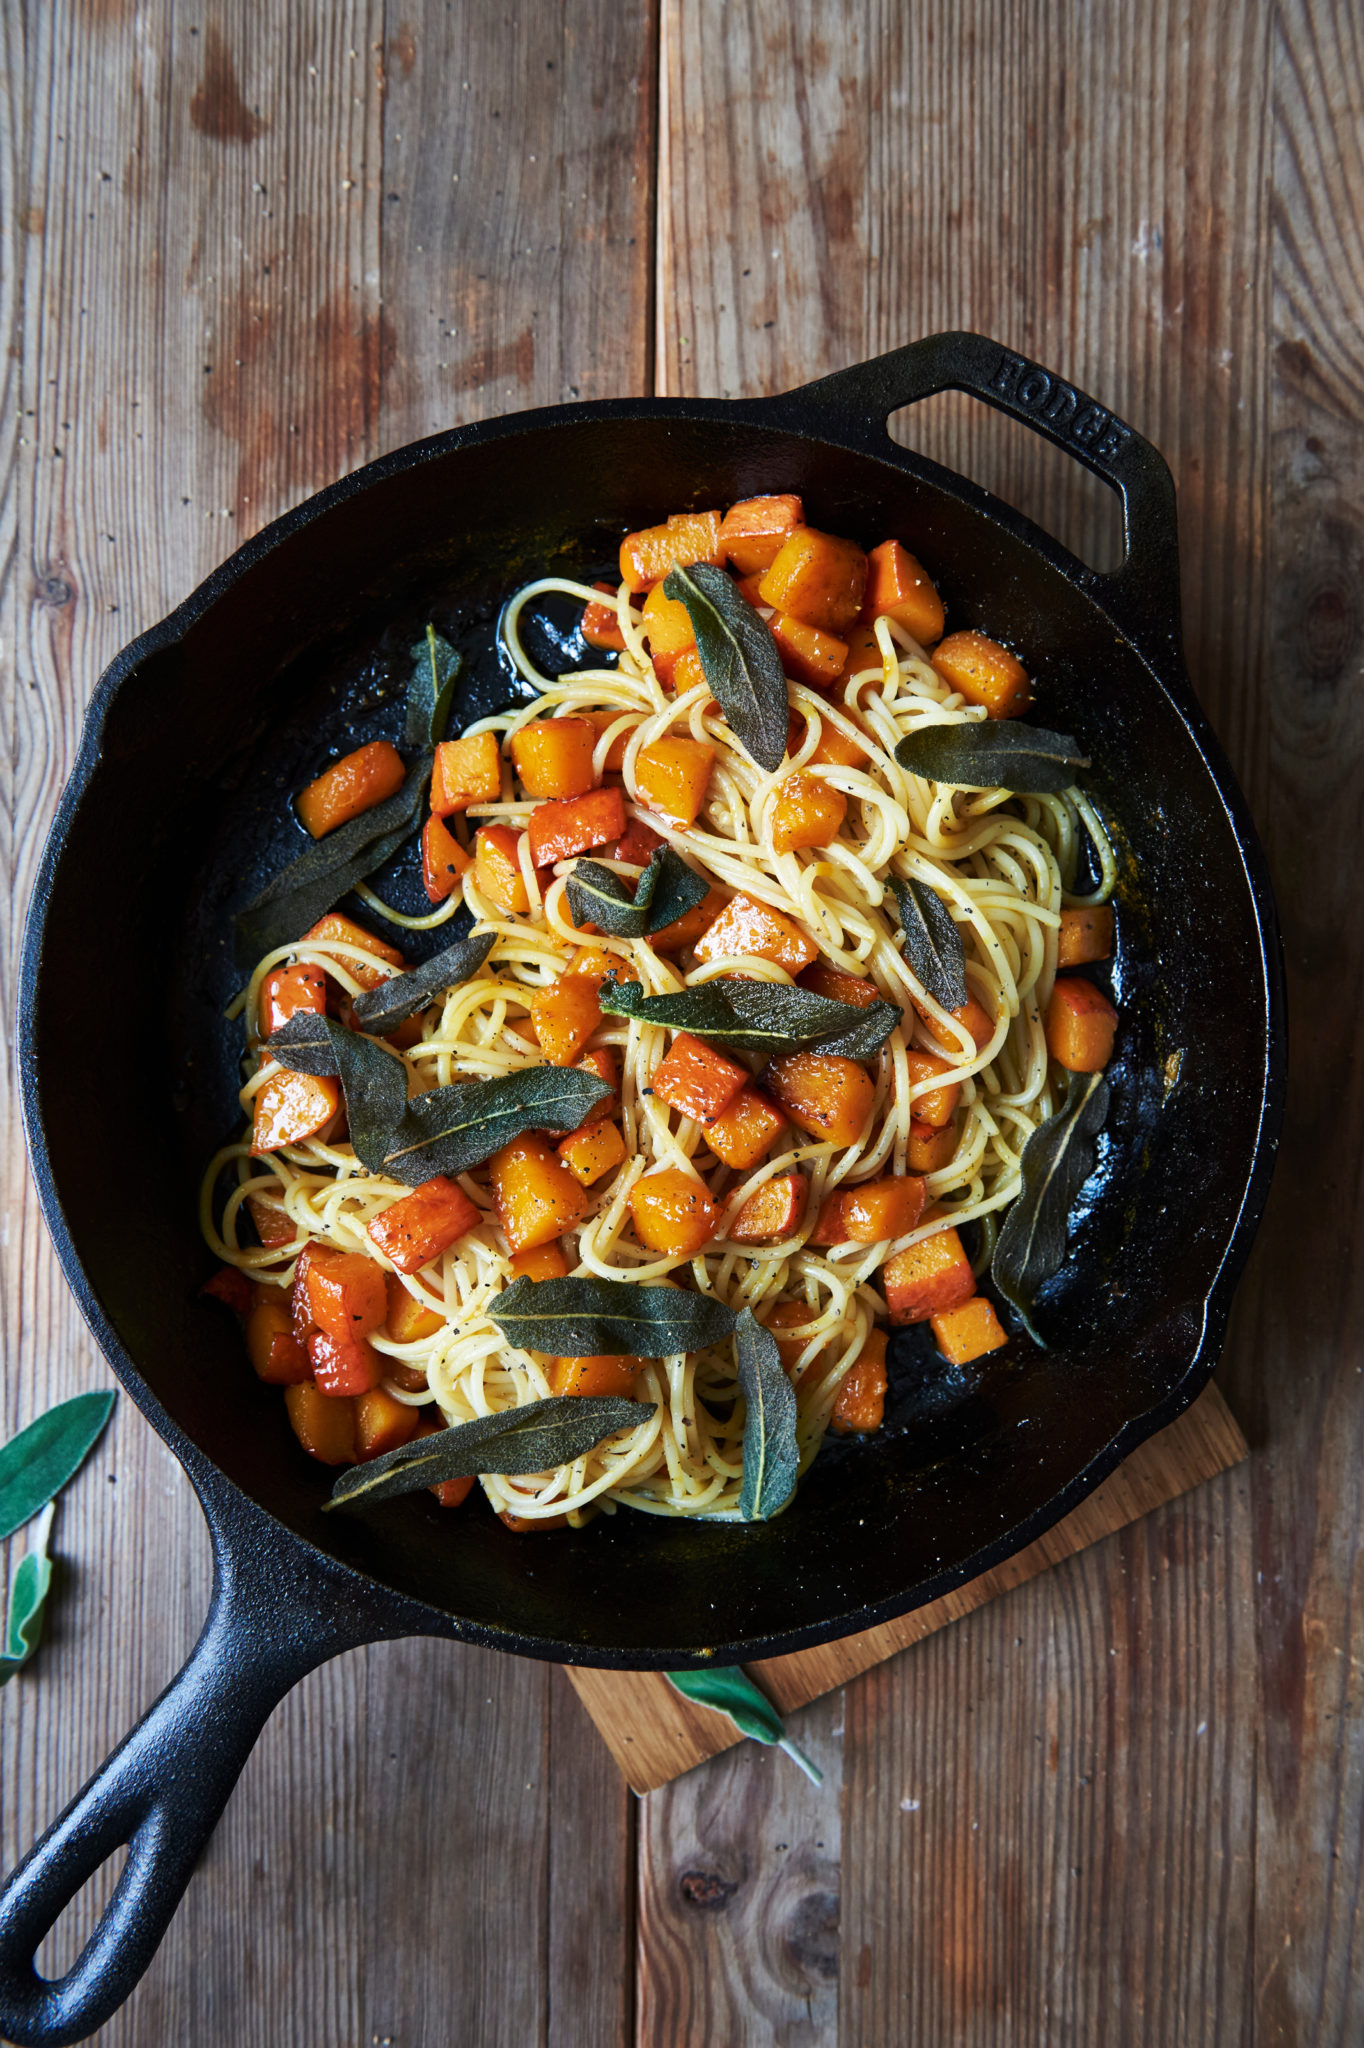 squash pasta with veggies